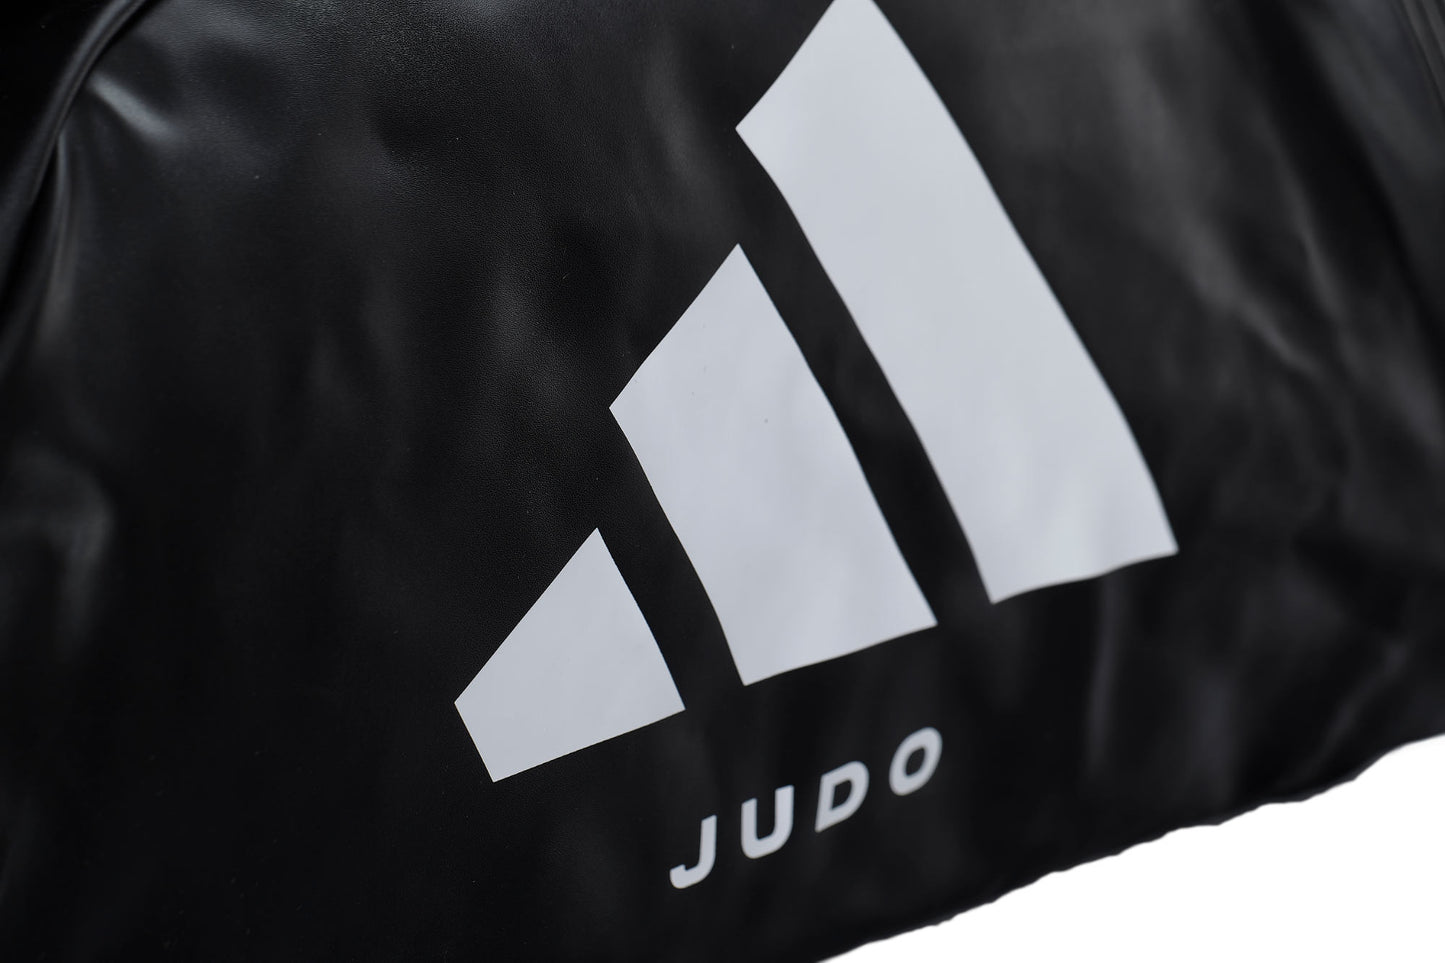 adidas 2in1 Sac Judo noir/blanc PU, adiACC051J